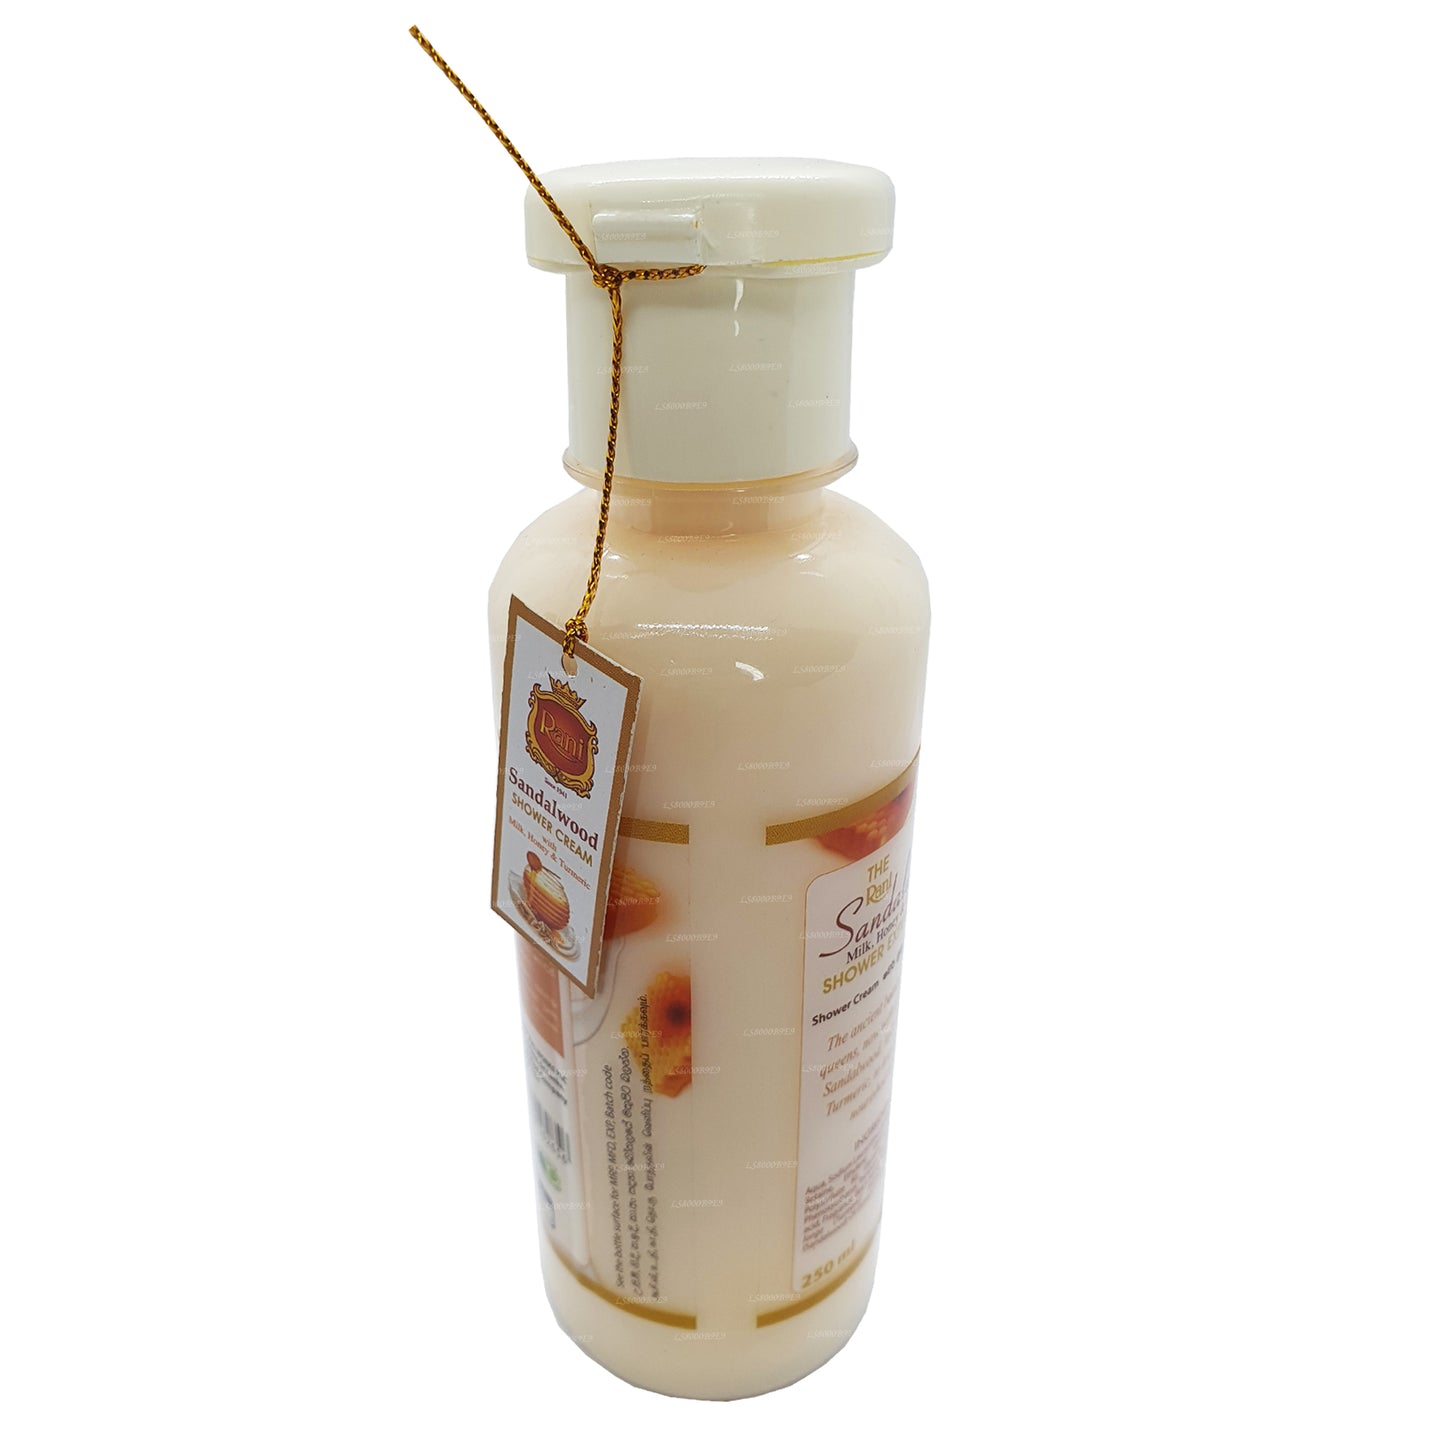 Swadeshi Rani sandeltræ brusecreme med mælk, honning og gurkemeje (250 ml)